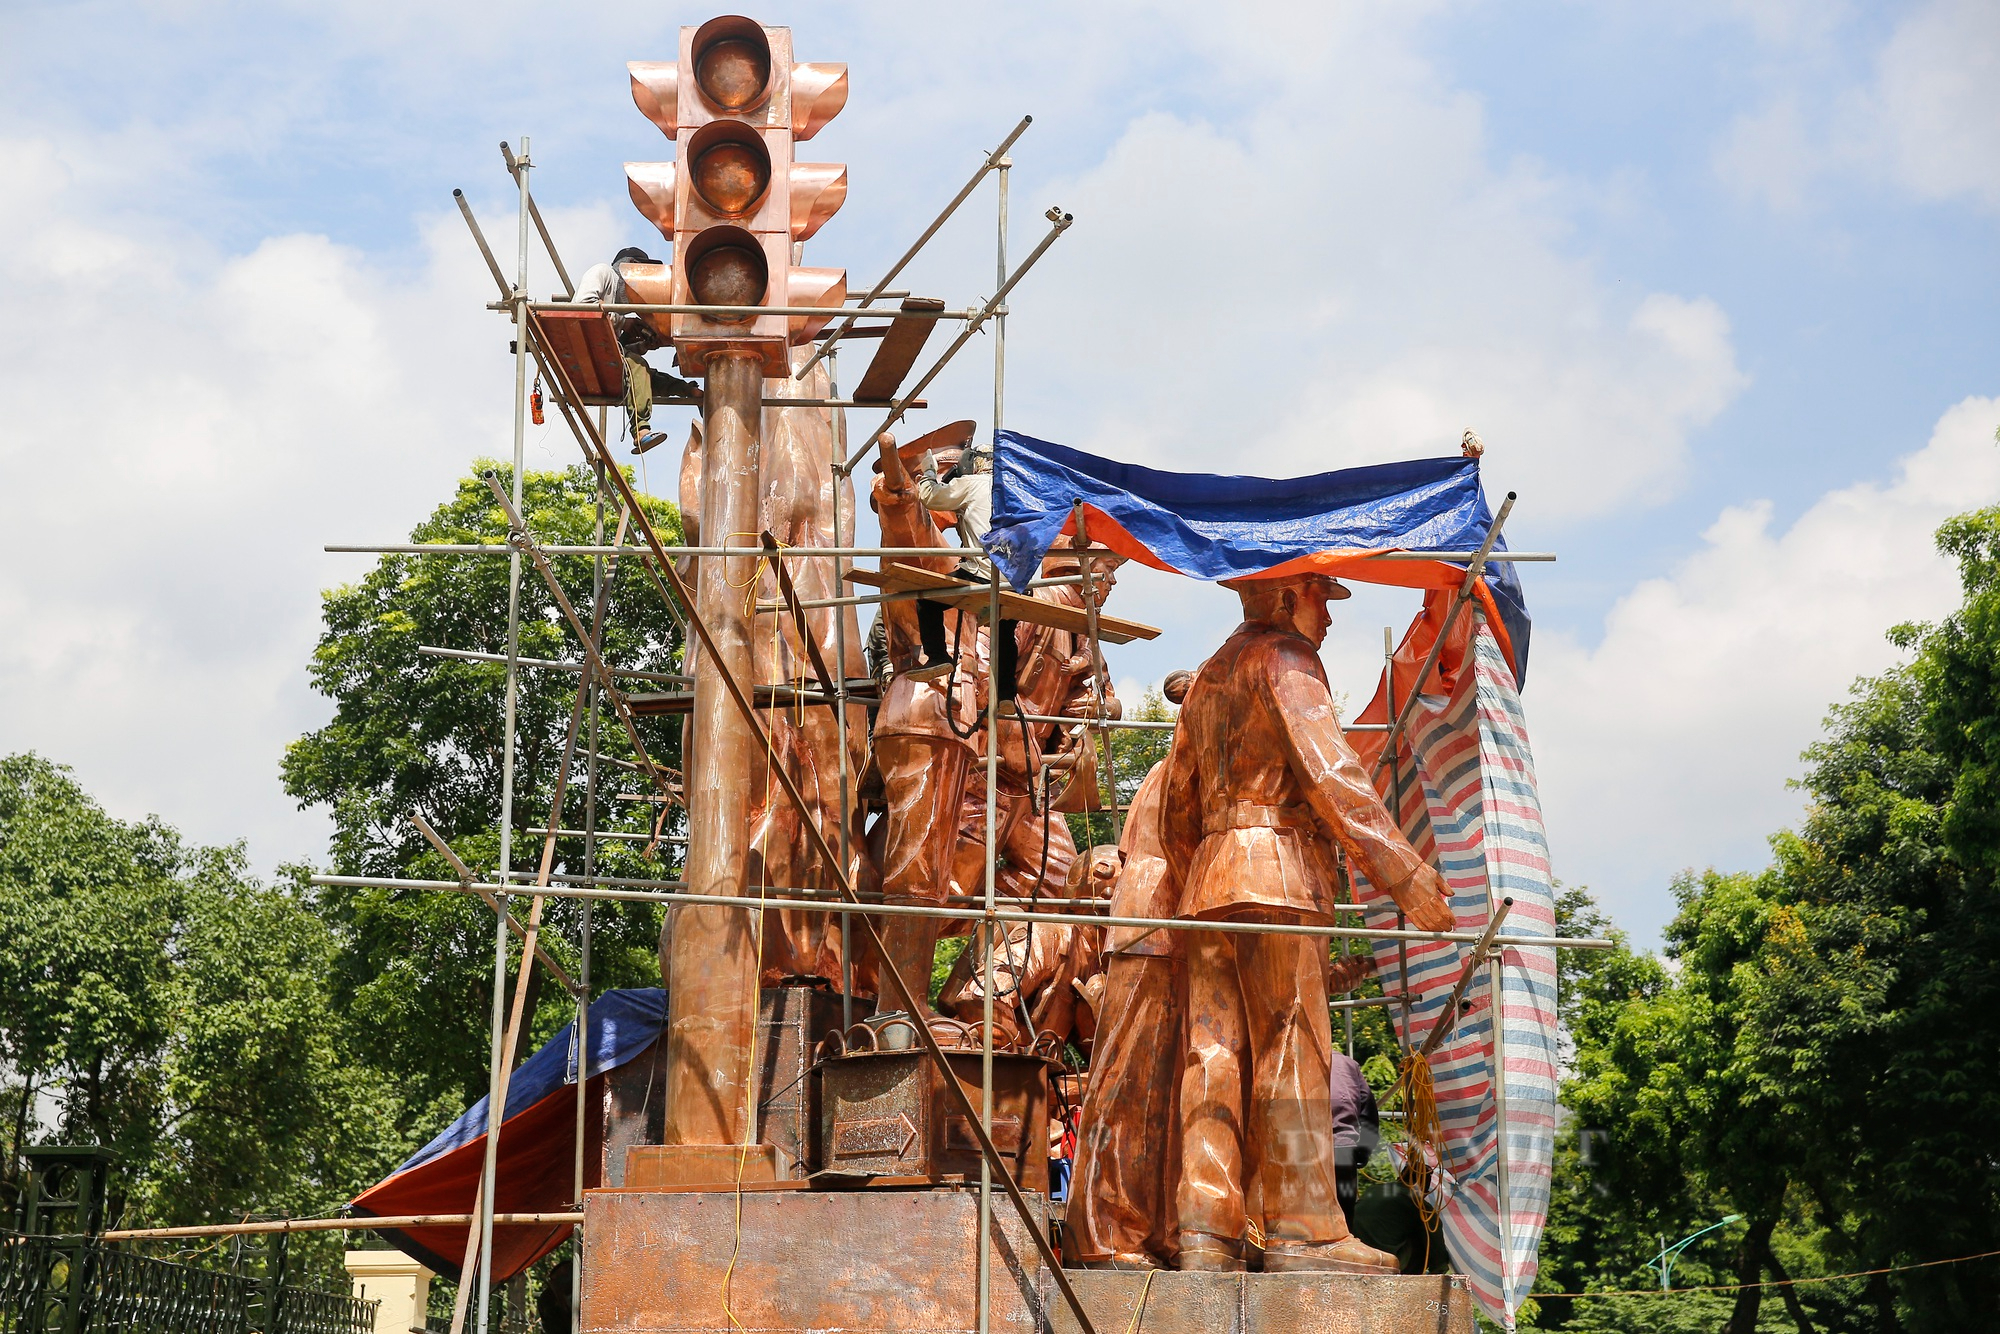 Tranh cãi về cụm tượng đài CSGT, PCCC ở Công viên Thống Nhất – Hà Nội: Sao chép và lắp ghép khiên cưỡng? - Ảnh 2.